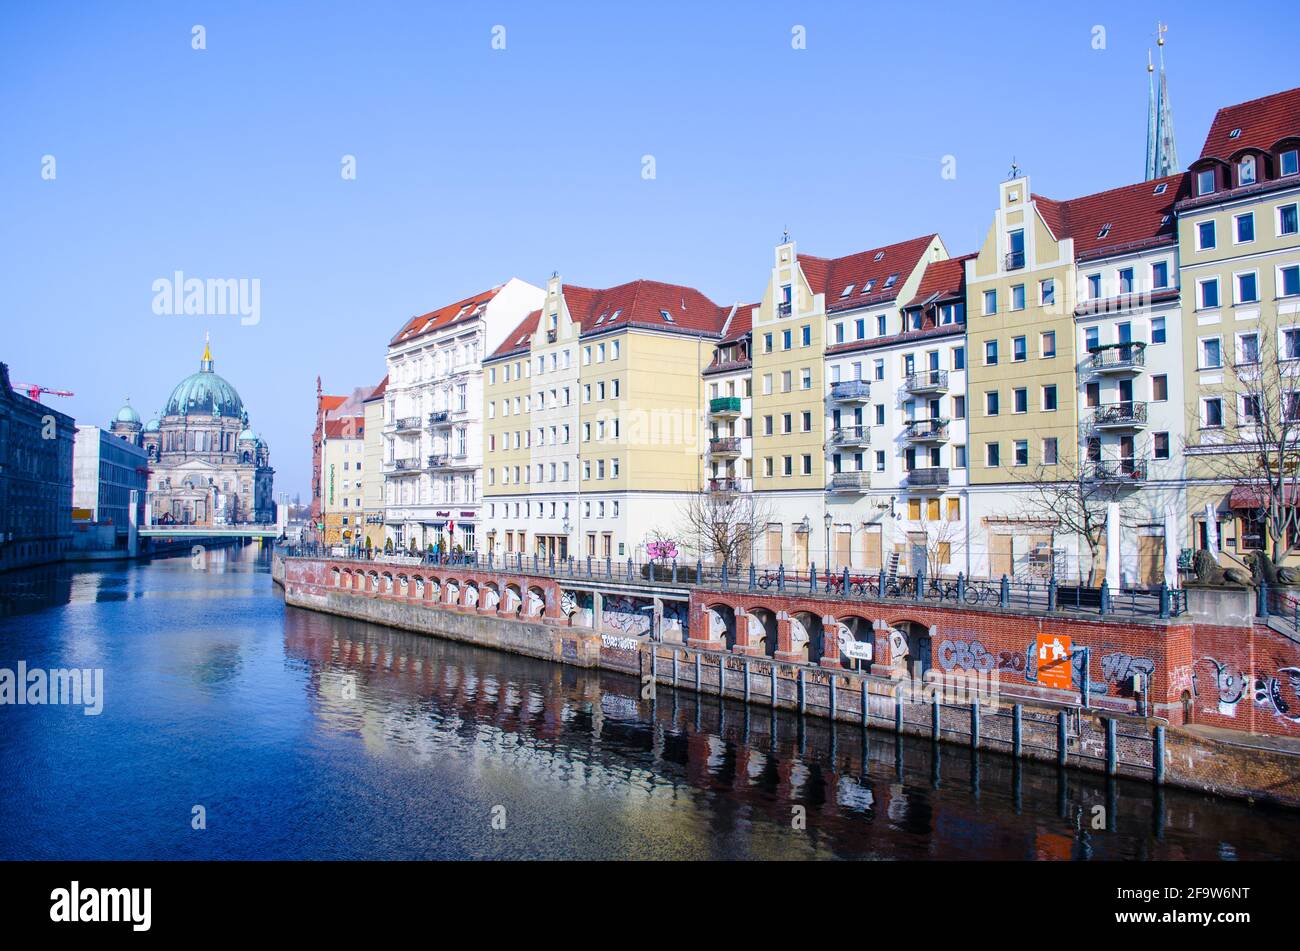 BERLIN, DEUTSCHLAND, 12. MÄRZ 2015: Blick auf das Flussufer des Spree in berlin mit dem berühmten berliner Dom am anderen Ende Stockfoto